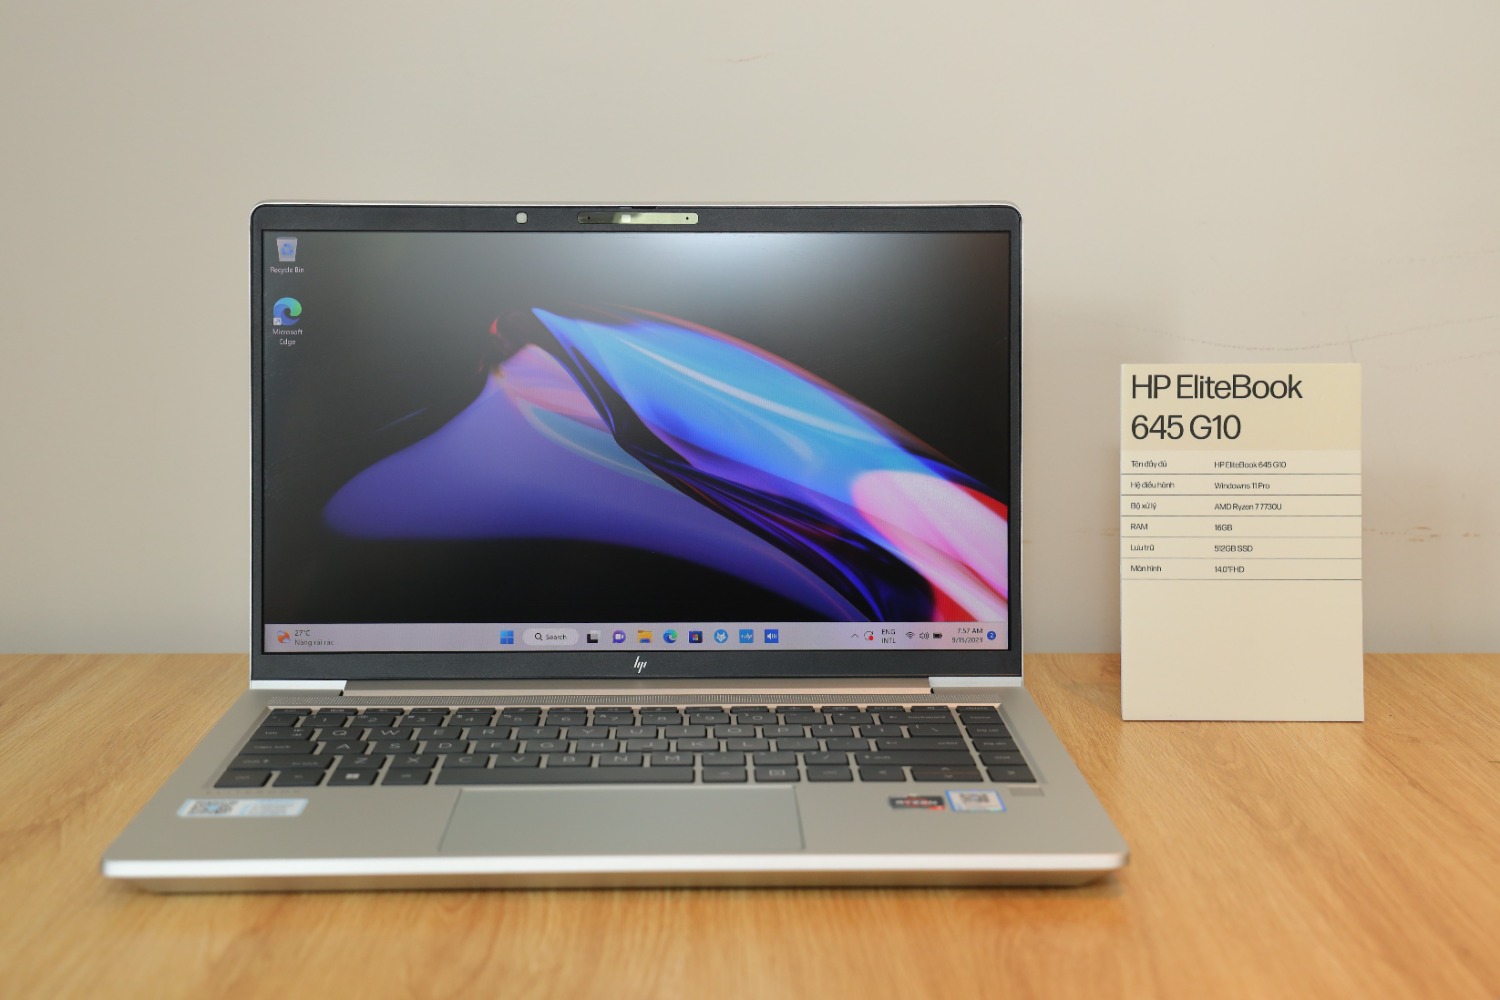 HP EliteBook 645 G10 